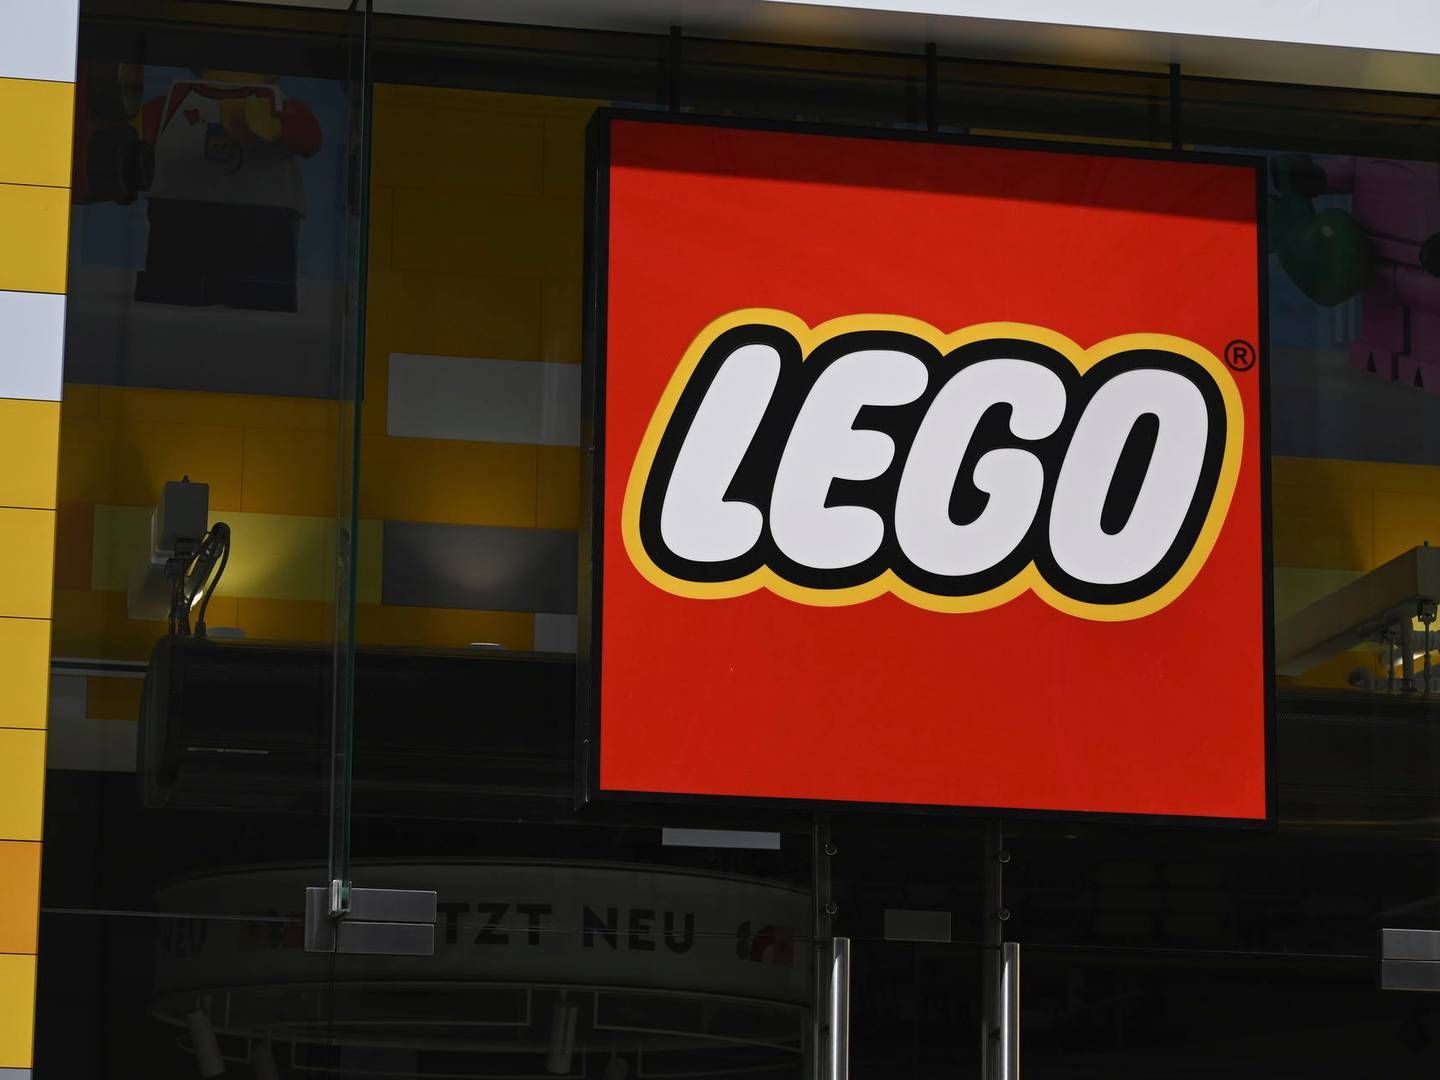 ”Det er i min optik befriende, at et globalt legetøjsbrand som Lego tager førertrøjen på, så vi kan løsne op for noget af det, som nogle voksne ikke tør snakke om," siger brandingspecialist Vita Clausen om nyt Lego-initiativ. | Foto: Horst Galuschka/AP/Ritzau Scanpix